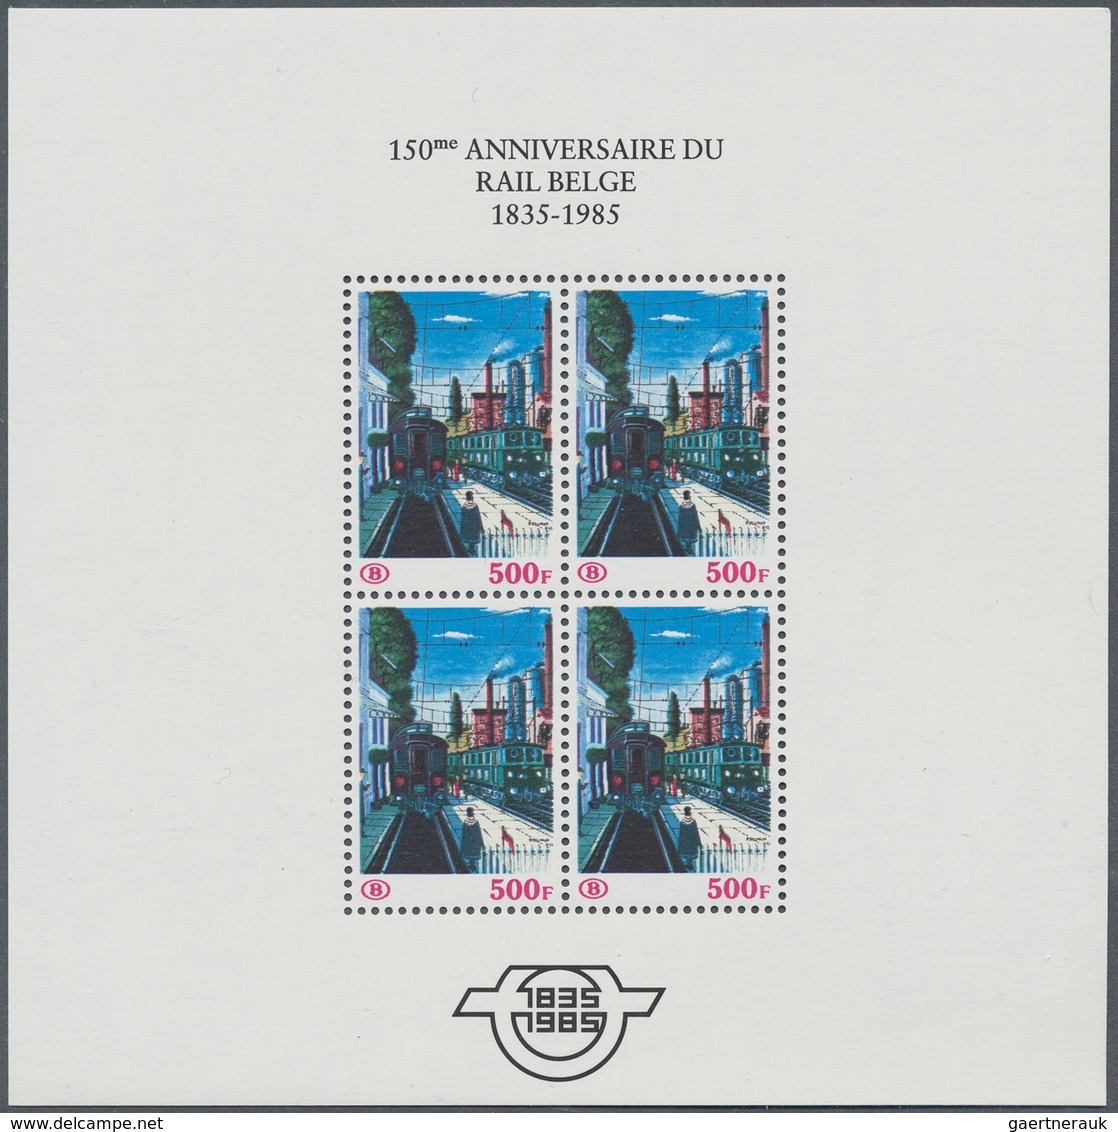 13423 Belgien - Eisenbahnpaketmarken: 1985, "150 Jahre Eisenbahn" alle 7 Blocks in Luxusqualität (C.O.B. 4